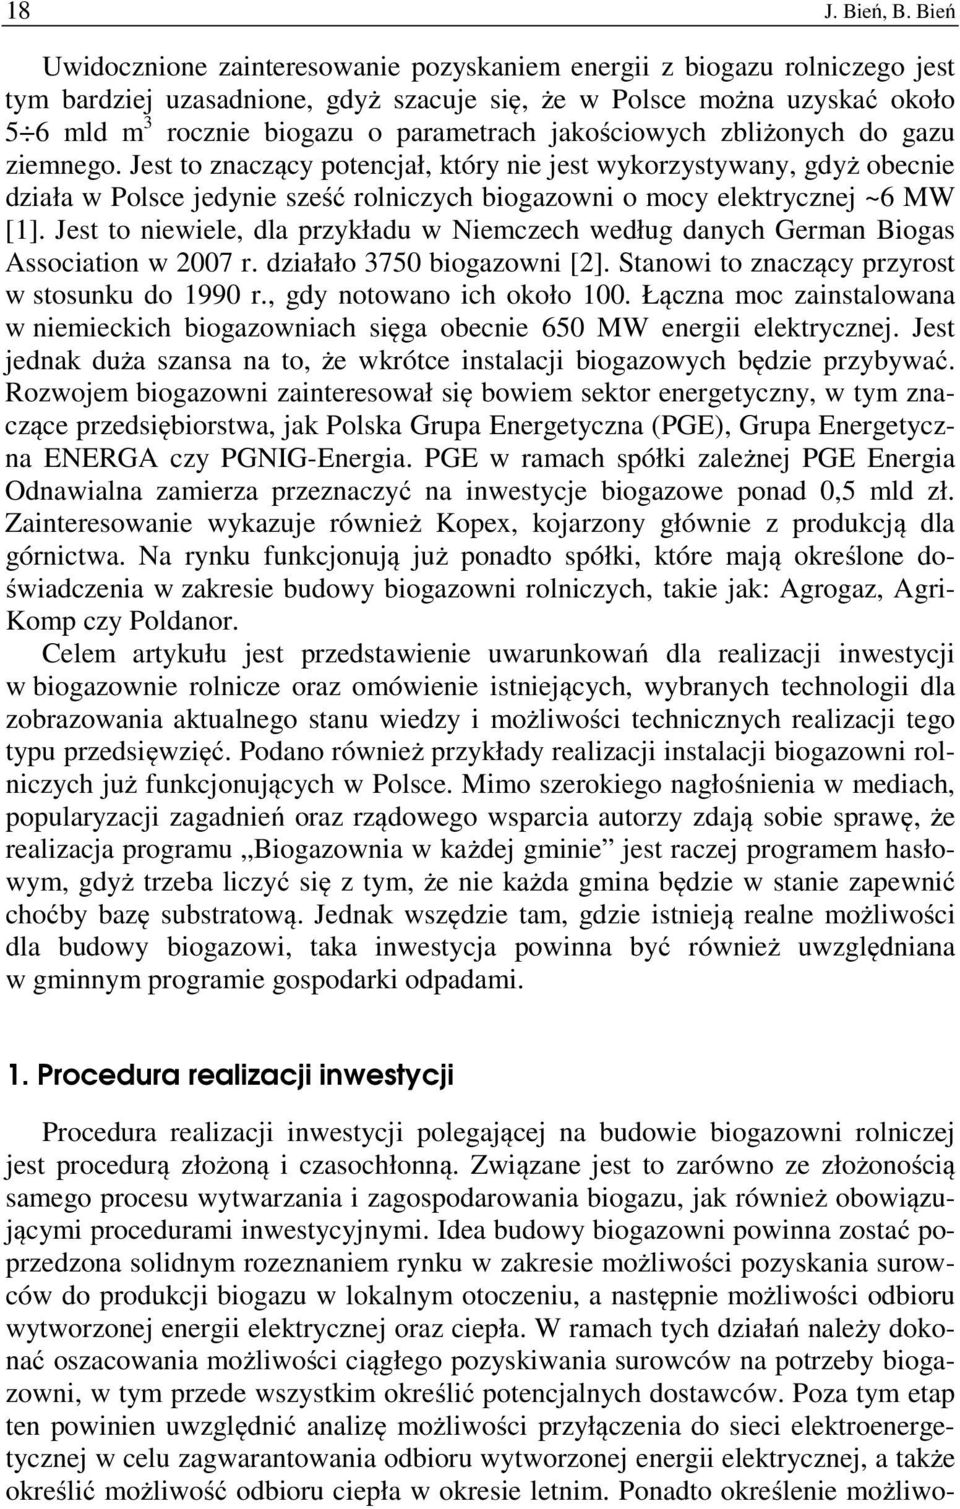 jakościowych zbliżonych do gazu ziemnego. Jest to znaczący potencjał, który nie jest wykorzystywany, gdyż obecnie działa w Polsce jedynie sześć rolniczych biogazowni o mocy elektrycznej ~6 MW [1].